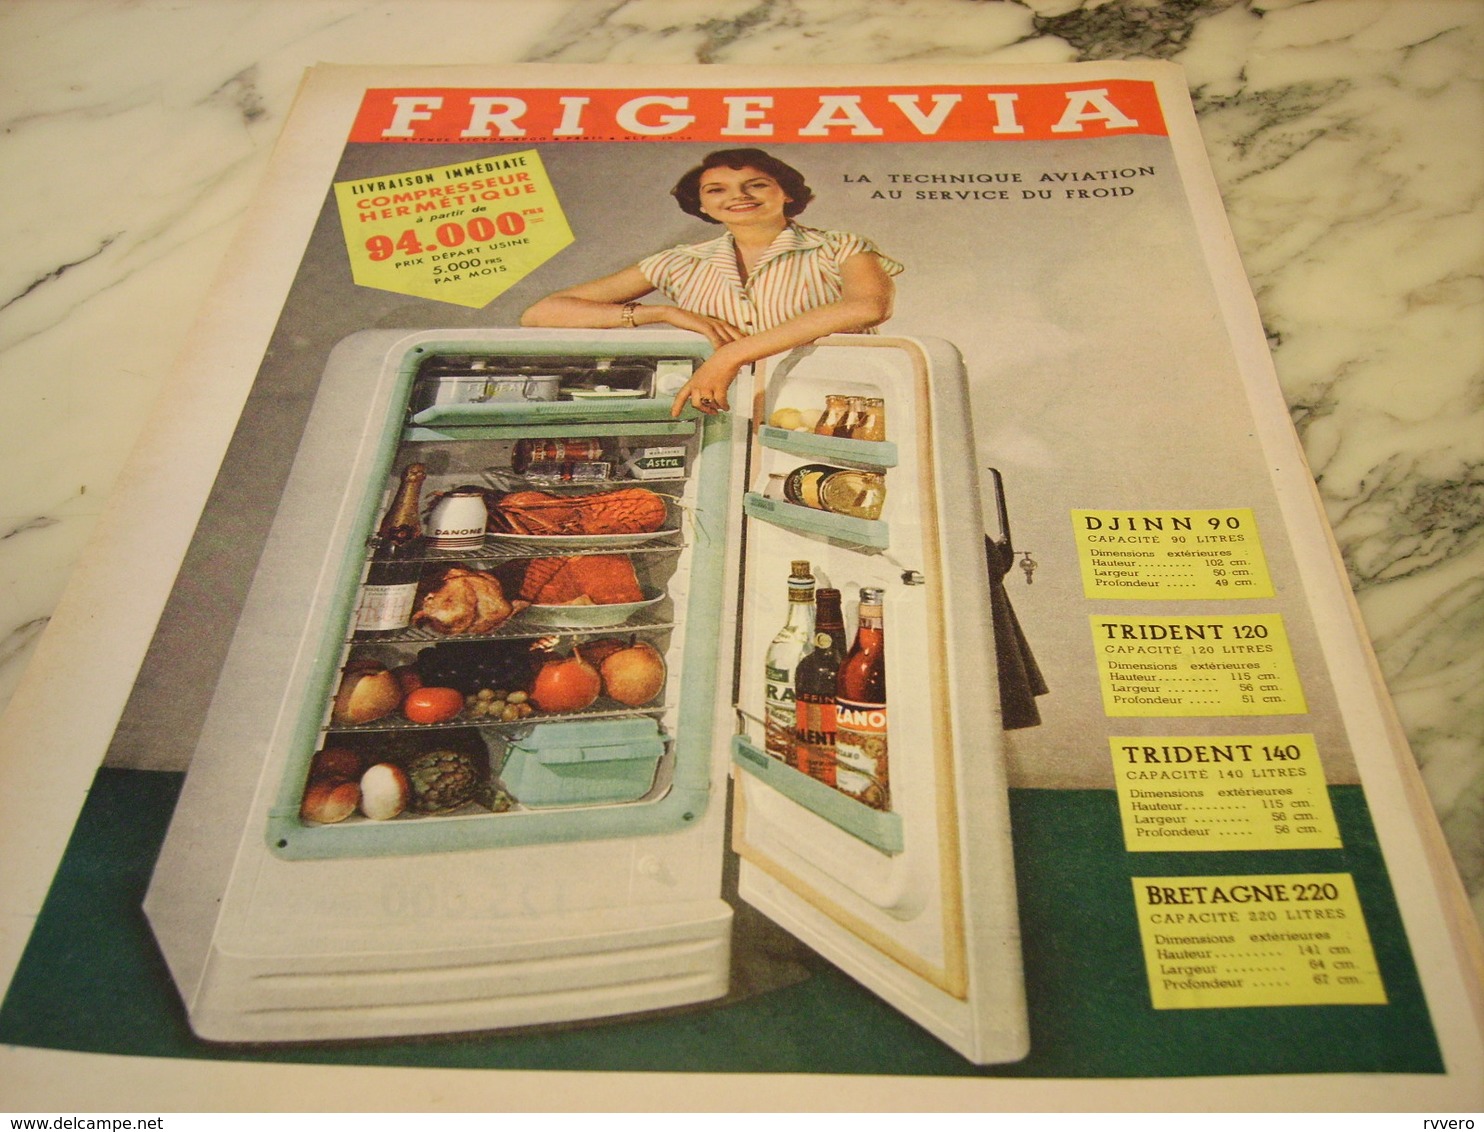 ANCIENNE AFFICHE PUBLICITE FRIGO FRIGEAVIA 1955 - Publicités